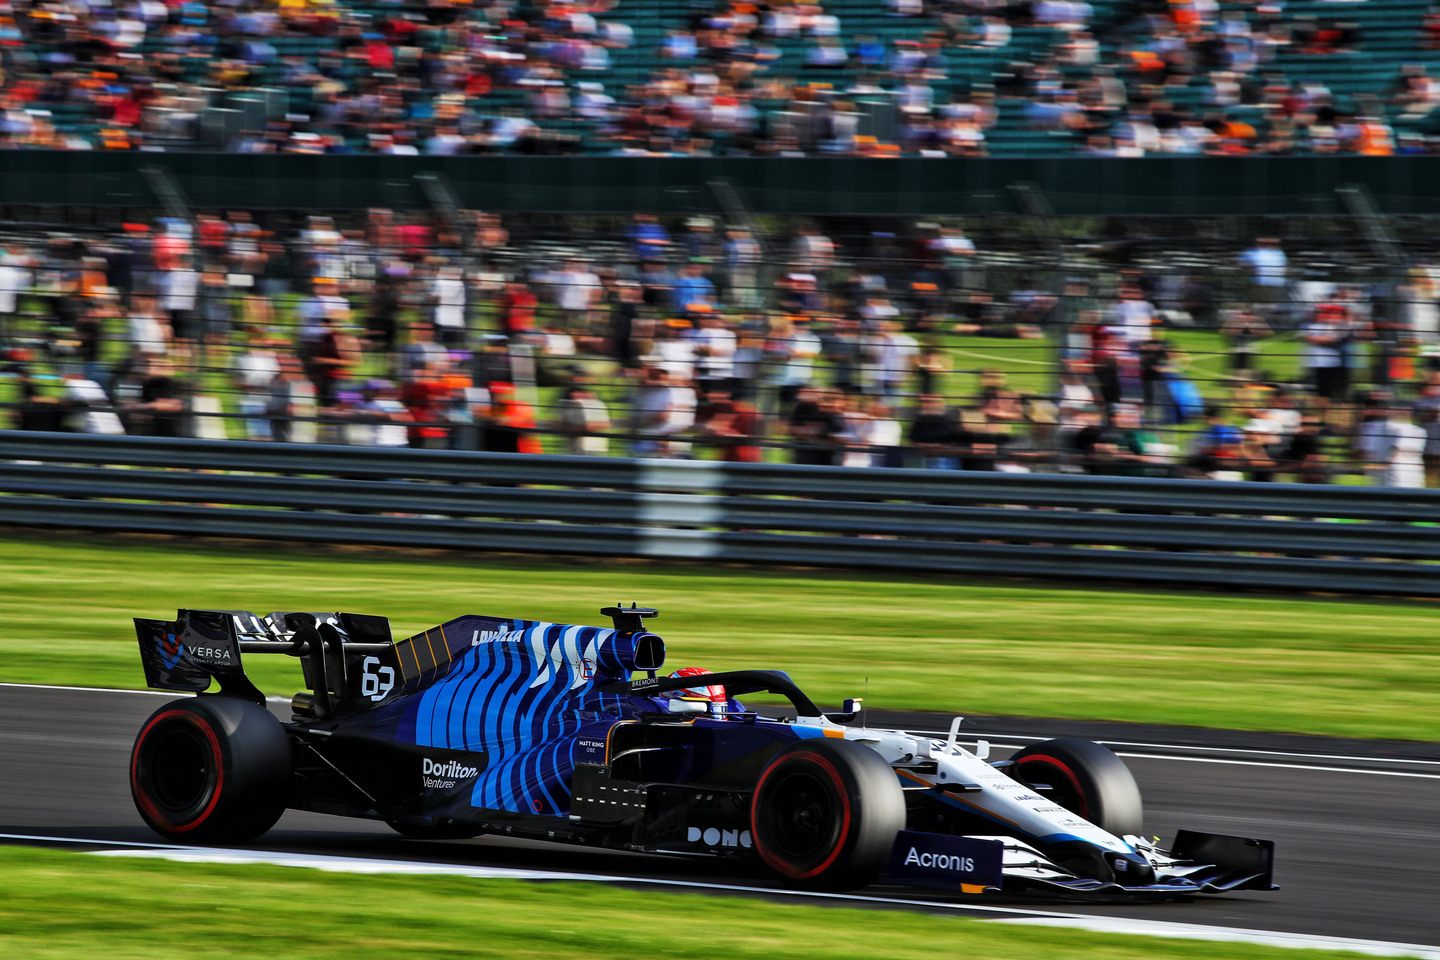 Williams © the-race.com